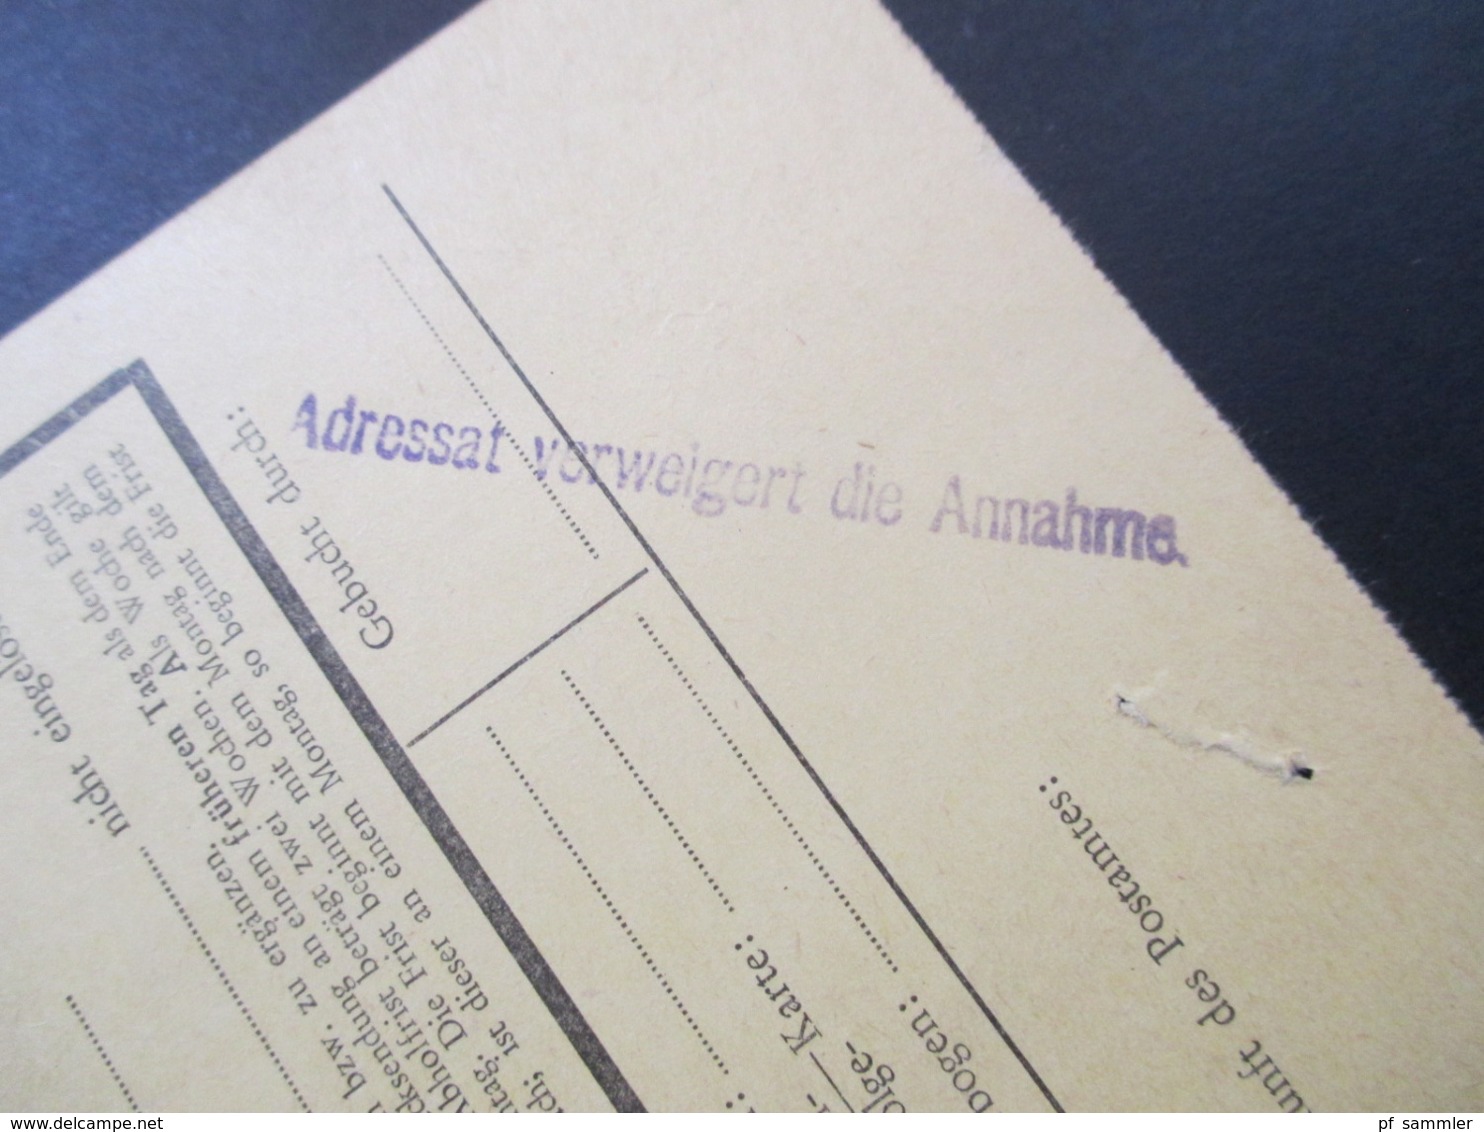 Österreich 1973 /74 Postauftrag AKB 9 Kraftfahrzeugsteuer Finanzamt Für Gebühren Stempel Adressat Verweigert Die Annahme - Briefe U. Dokumente